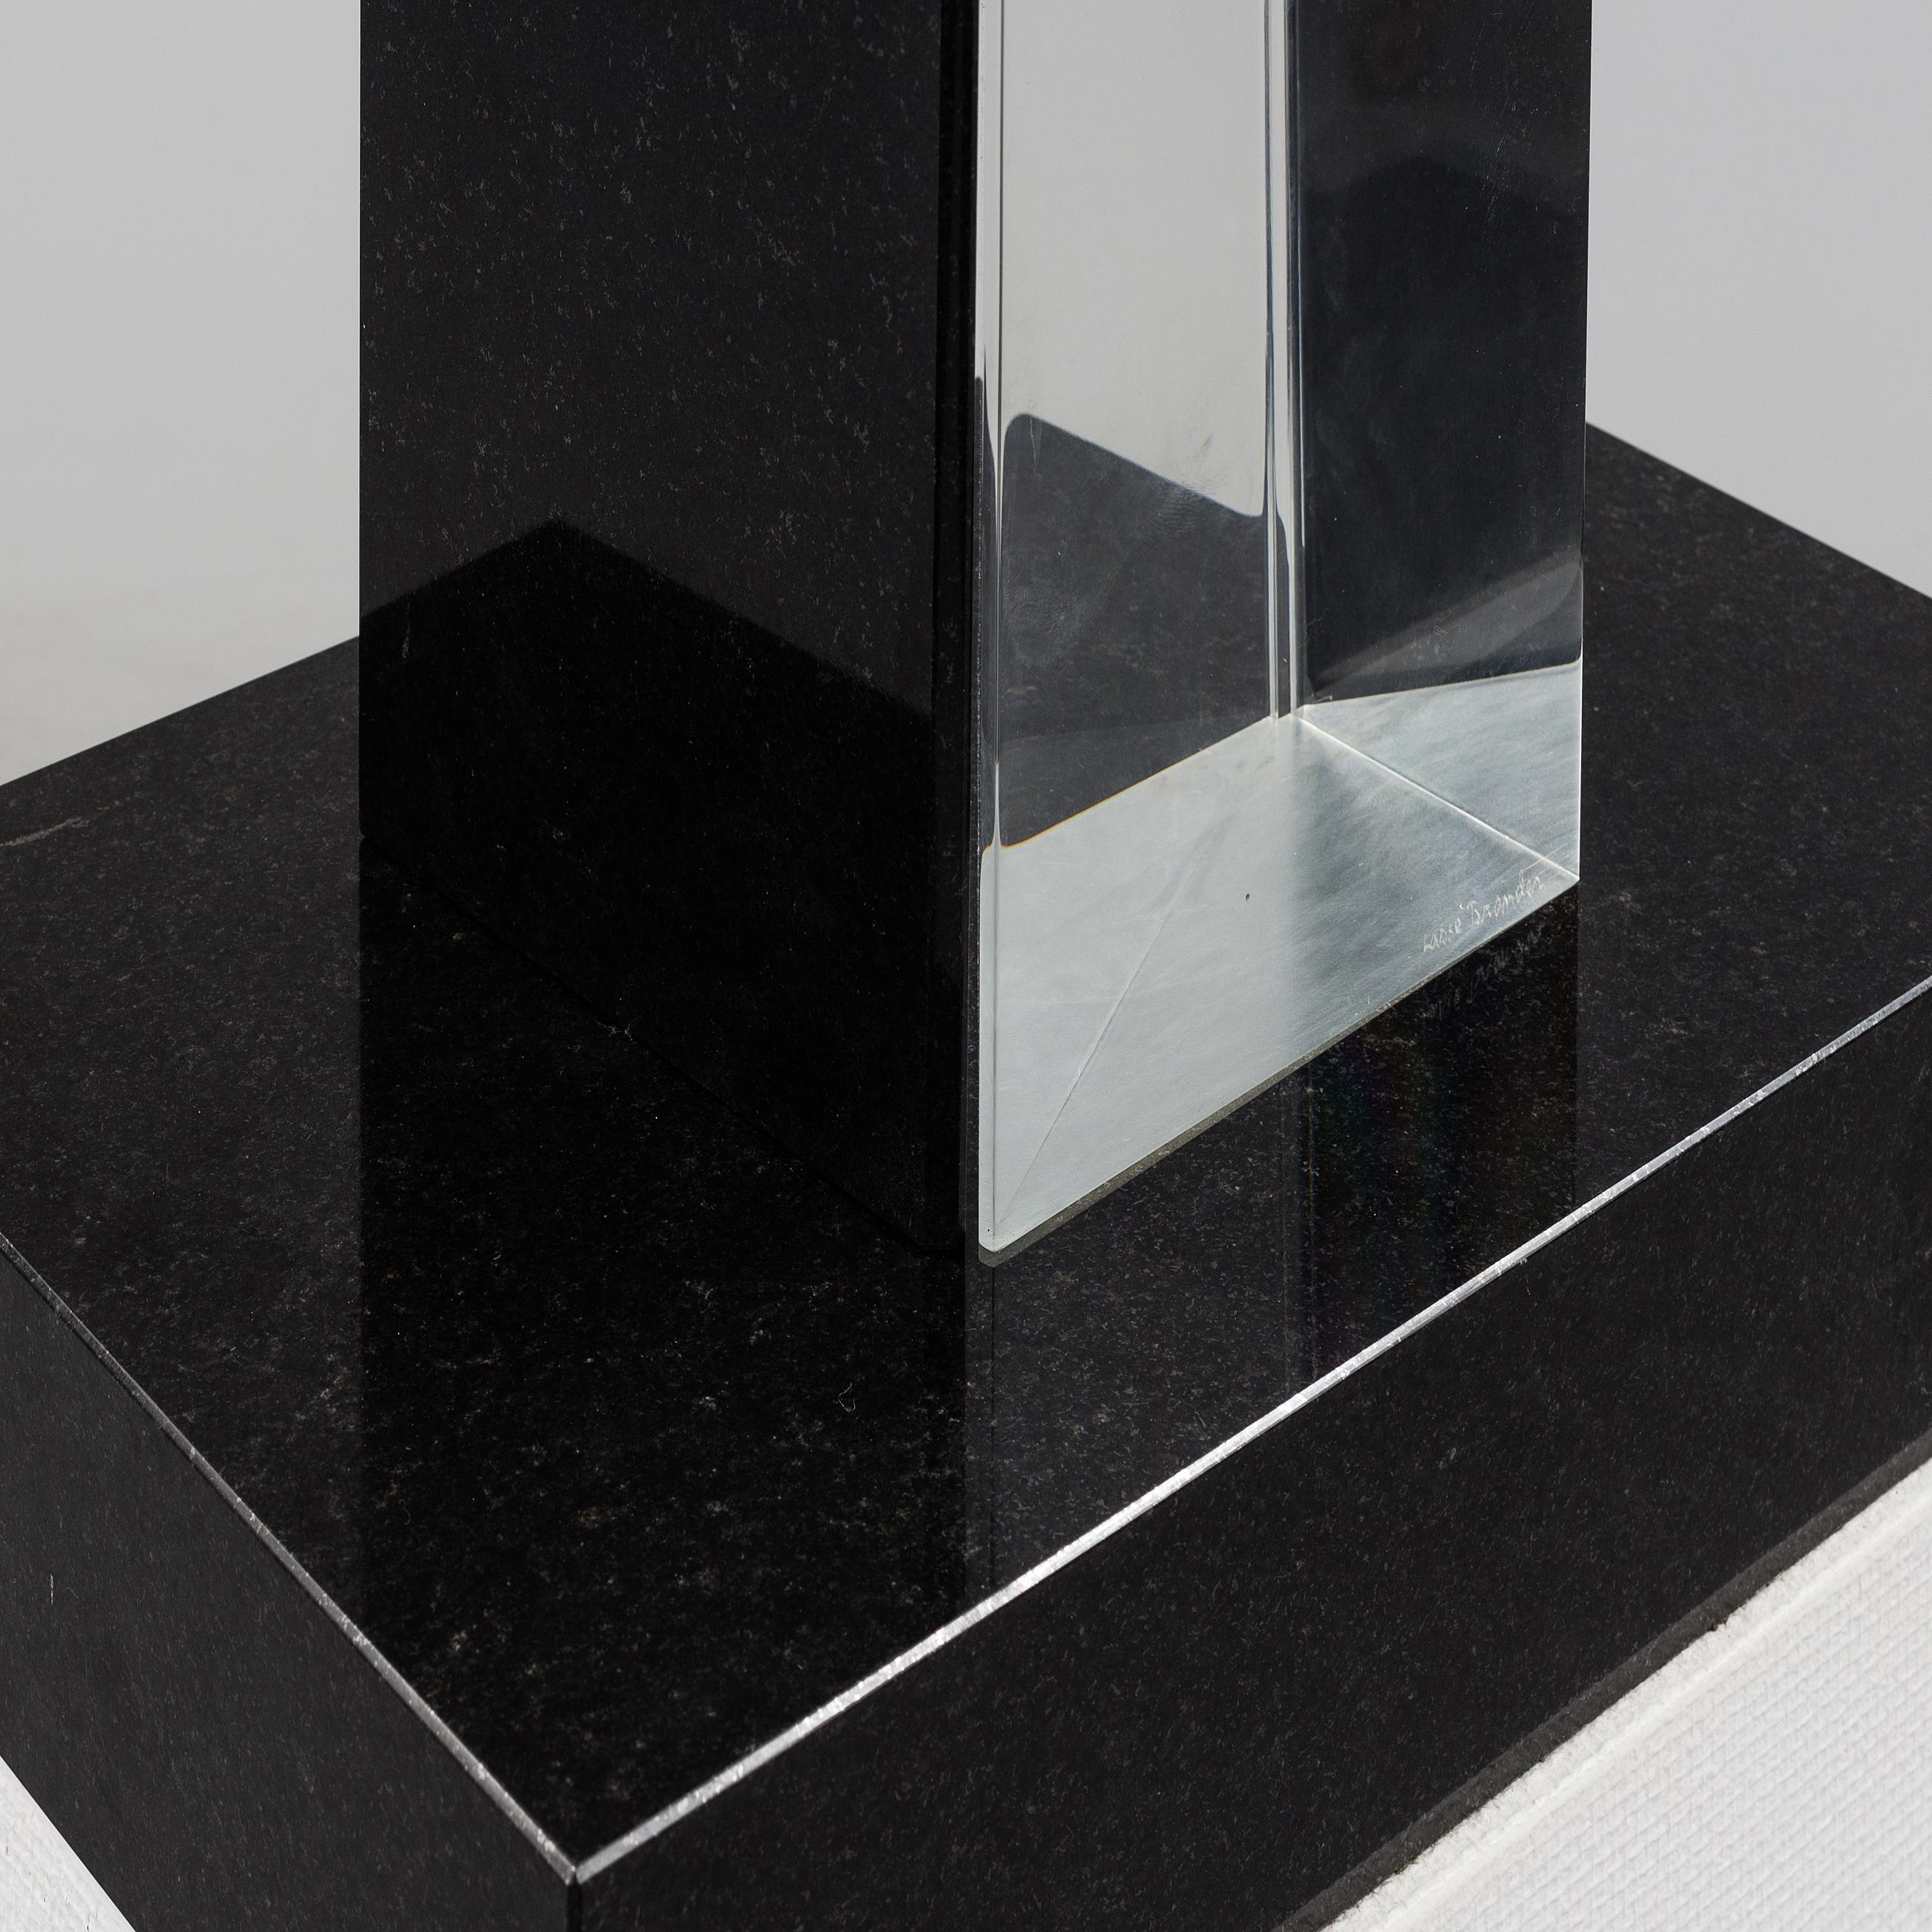 Einzigartiges Stück  Skulptur aus den 1980er Jahren von  Der schwedische Künstler Lasse Brander (1930-2 008)

Beeindruckendes Glas und Stein  Skulptur auf einem Sockel Gesamthöhe 172 cm (67,7 Zoll) aus 2 